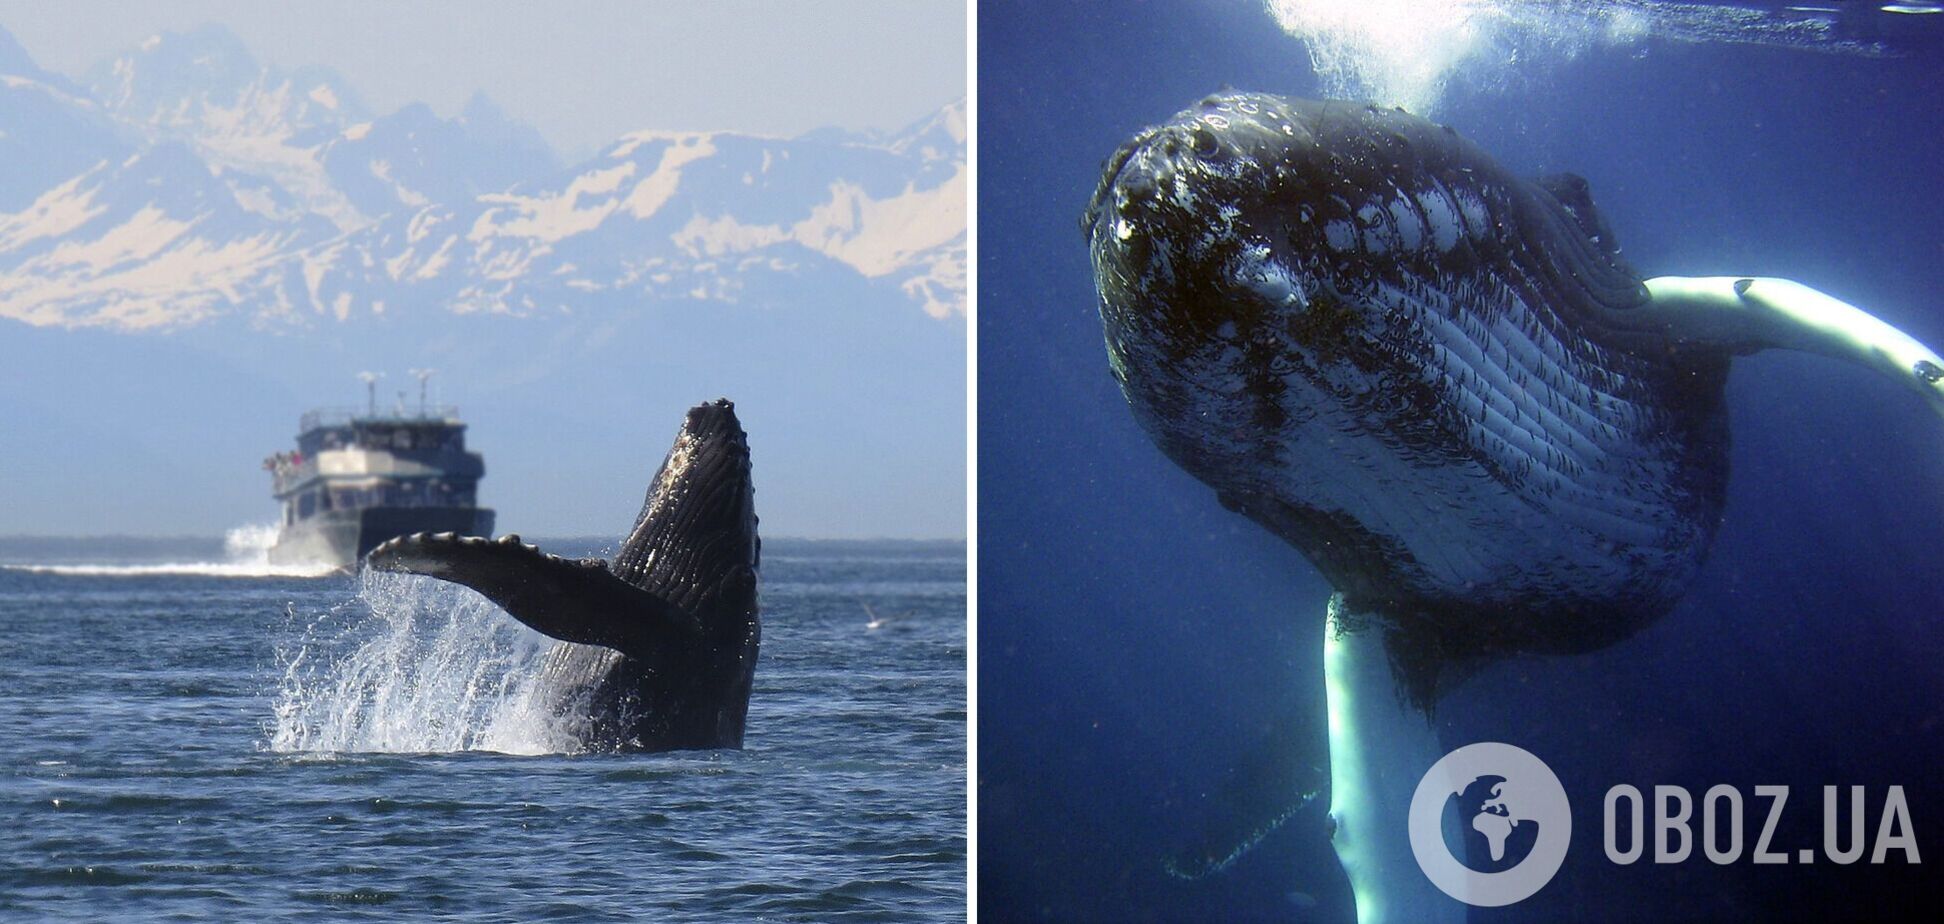 'Полювання' на китів: куди поїхати, щоб помилуватися граційними морськими створіннями